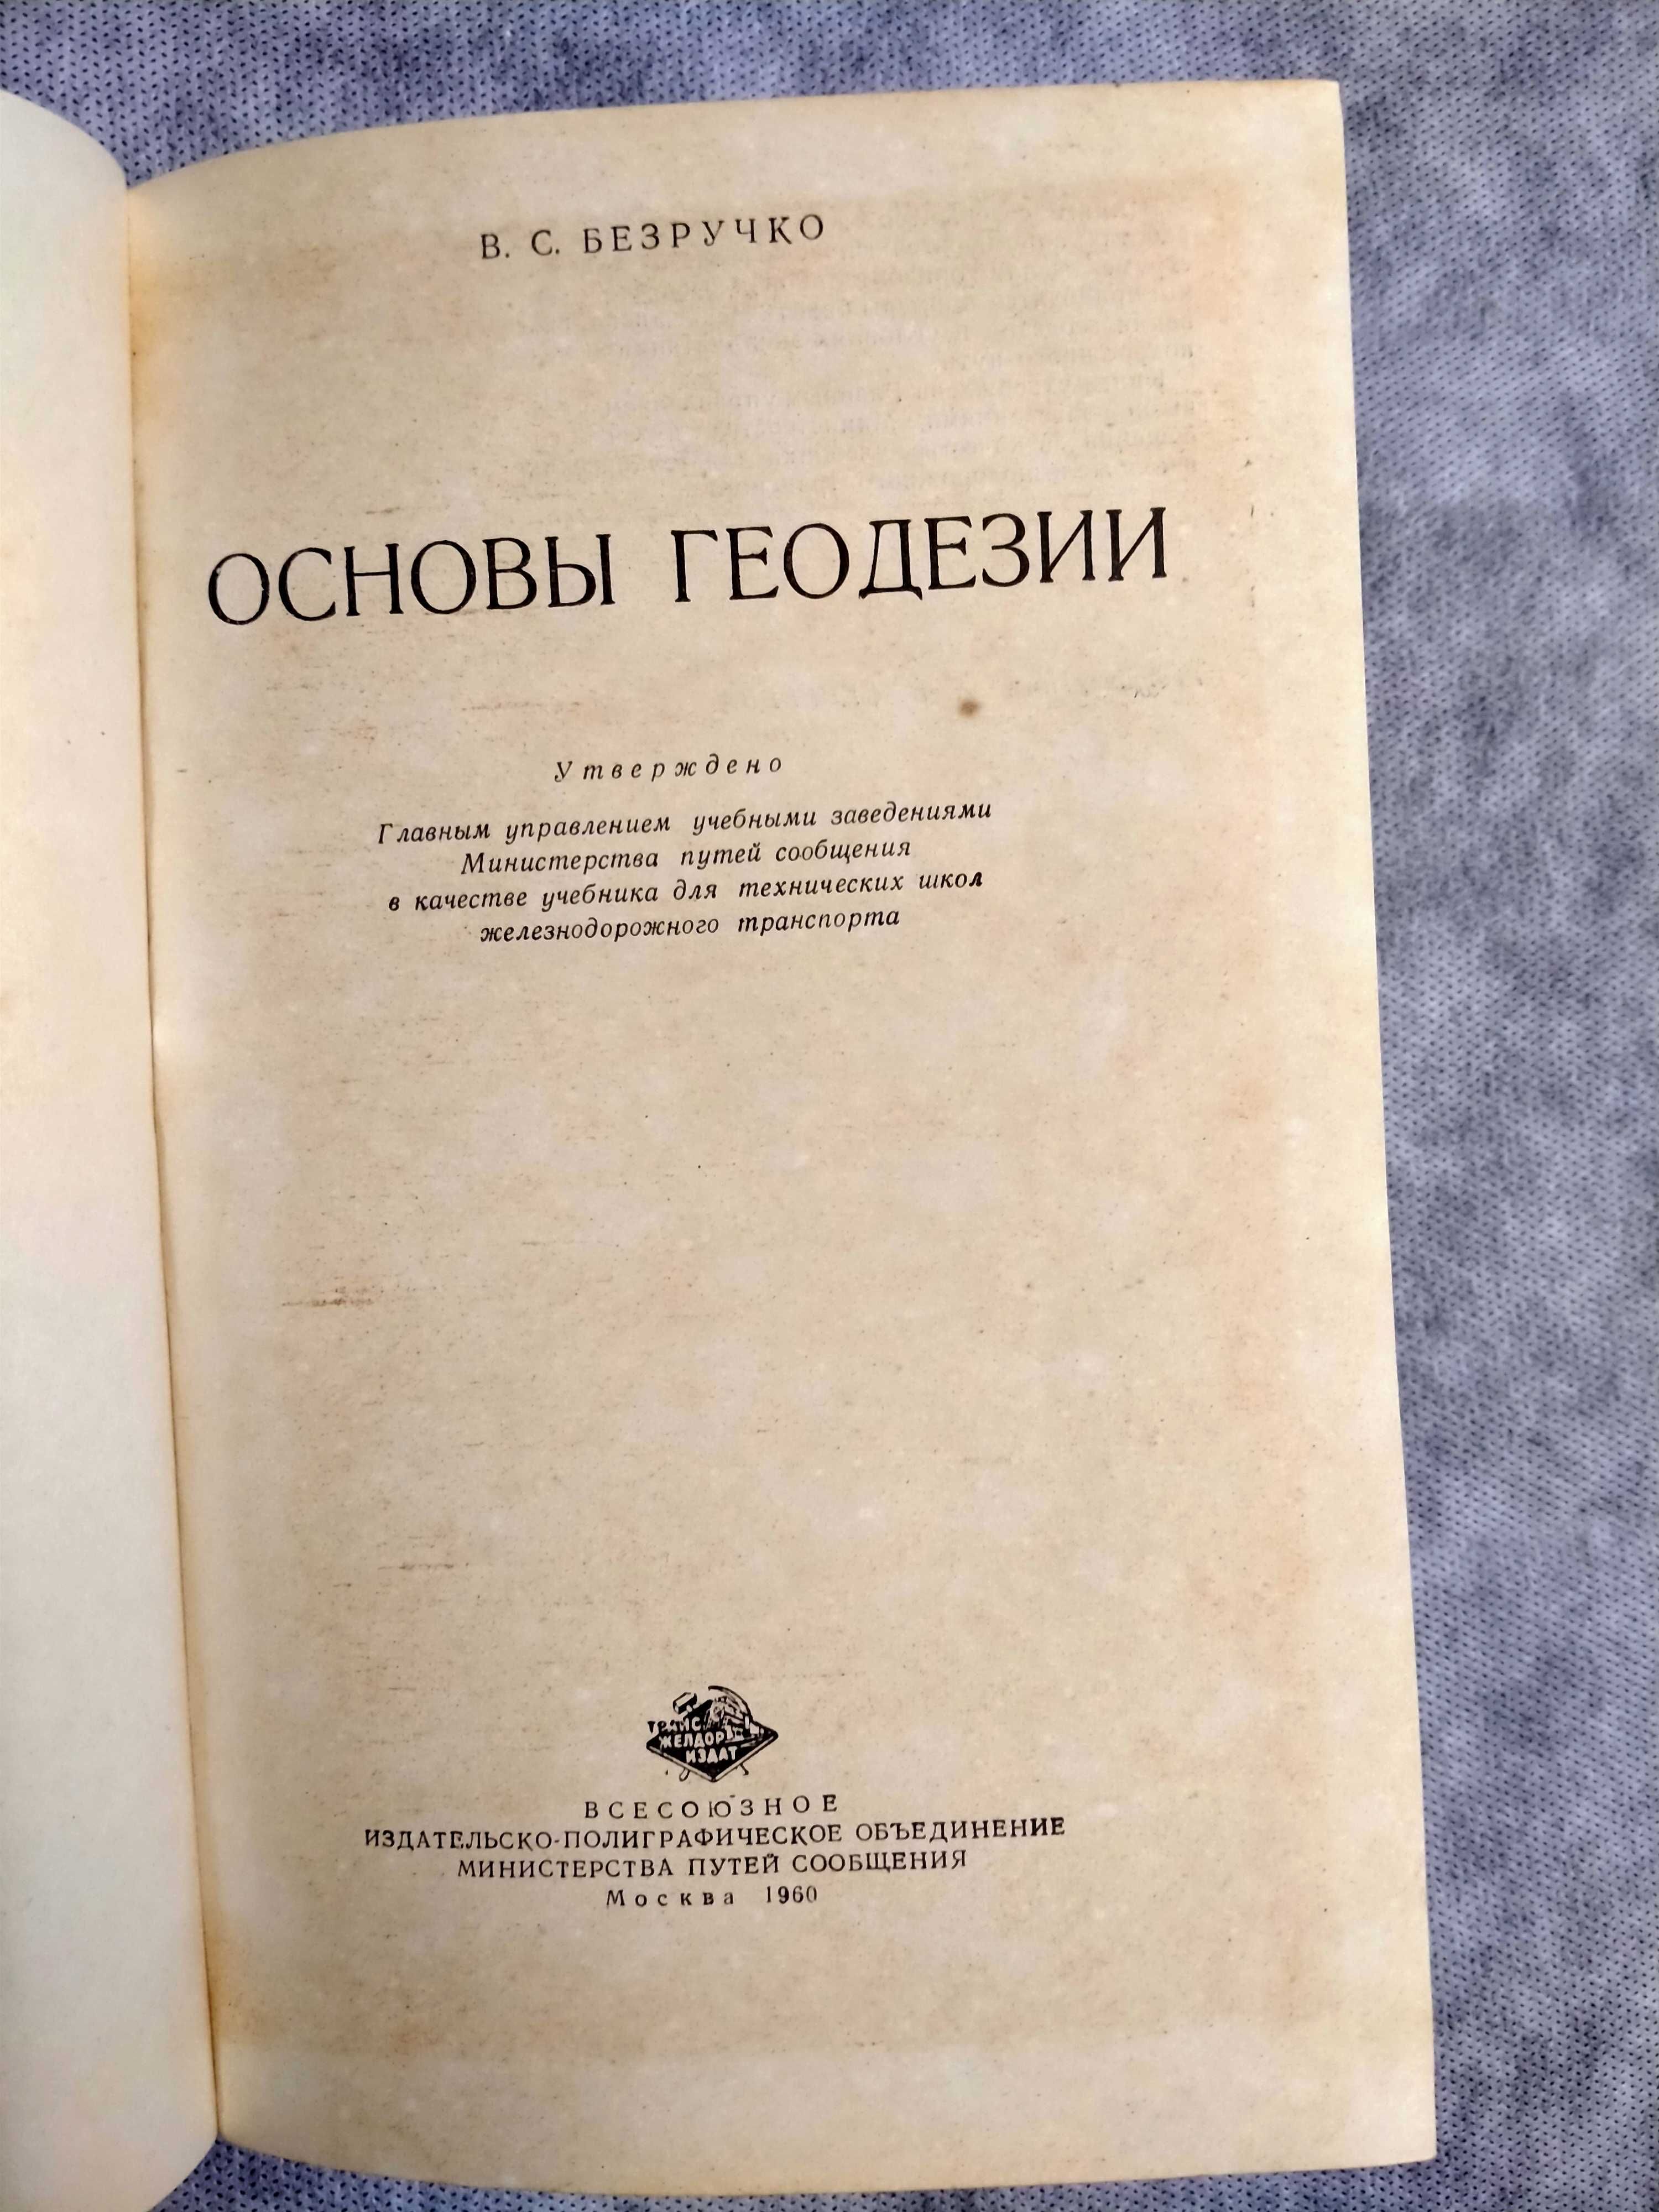 В.С.Безручко   «Основы геодезии» учебное пособие  1960г